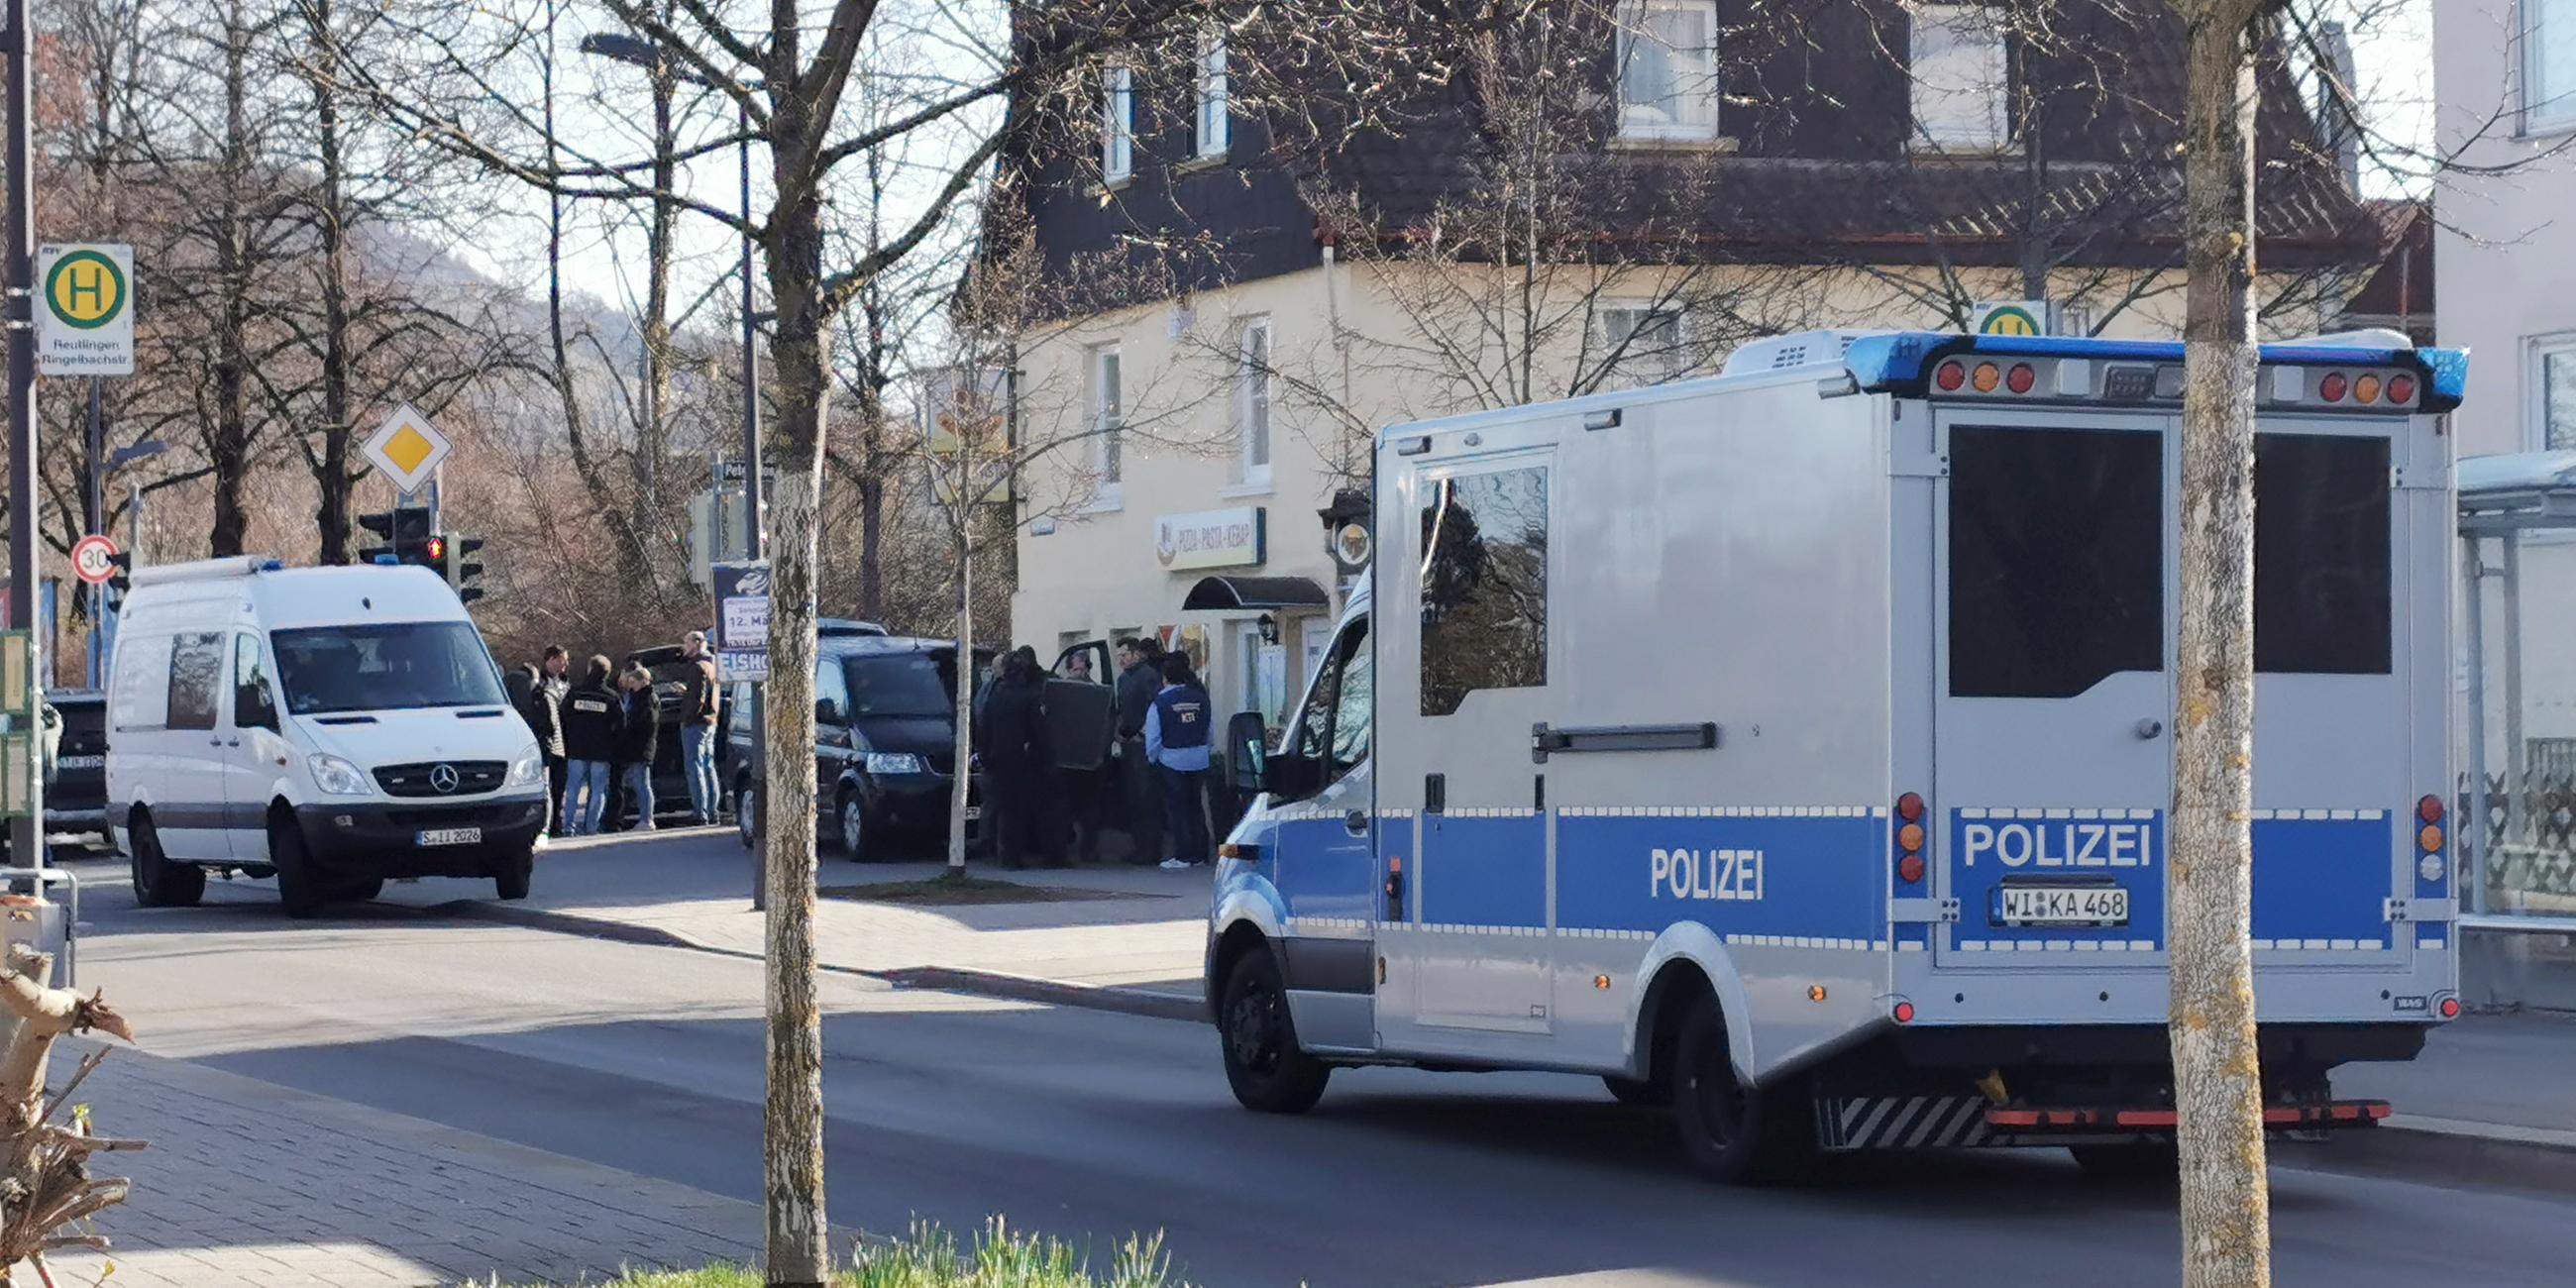 Polizeifahrzeuge stehen in einer Straße am 22.03.2023 in Reutlingen